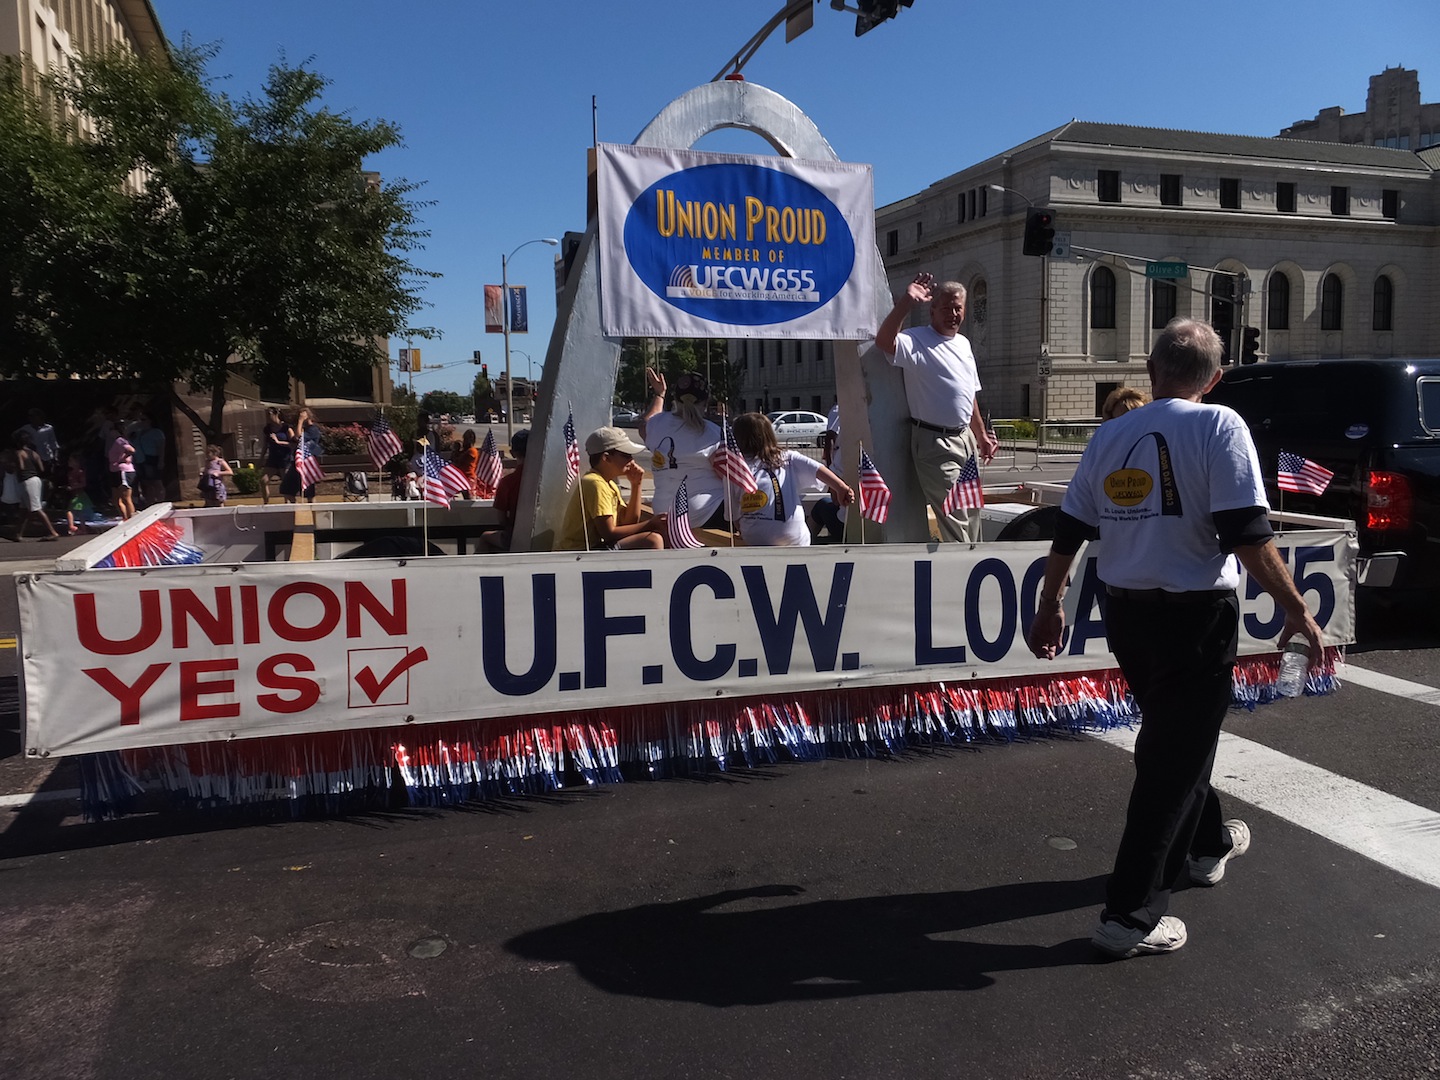 St. Louis Labor Day parade lineup set The Labor Tribune